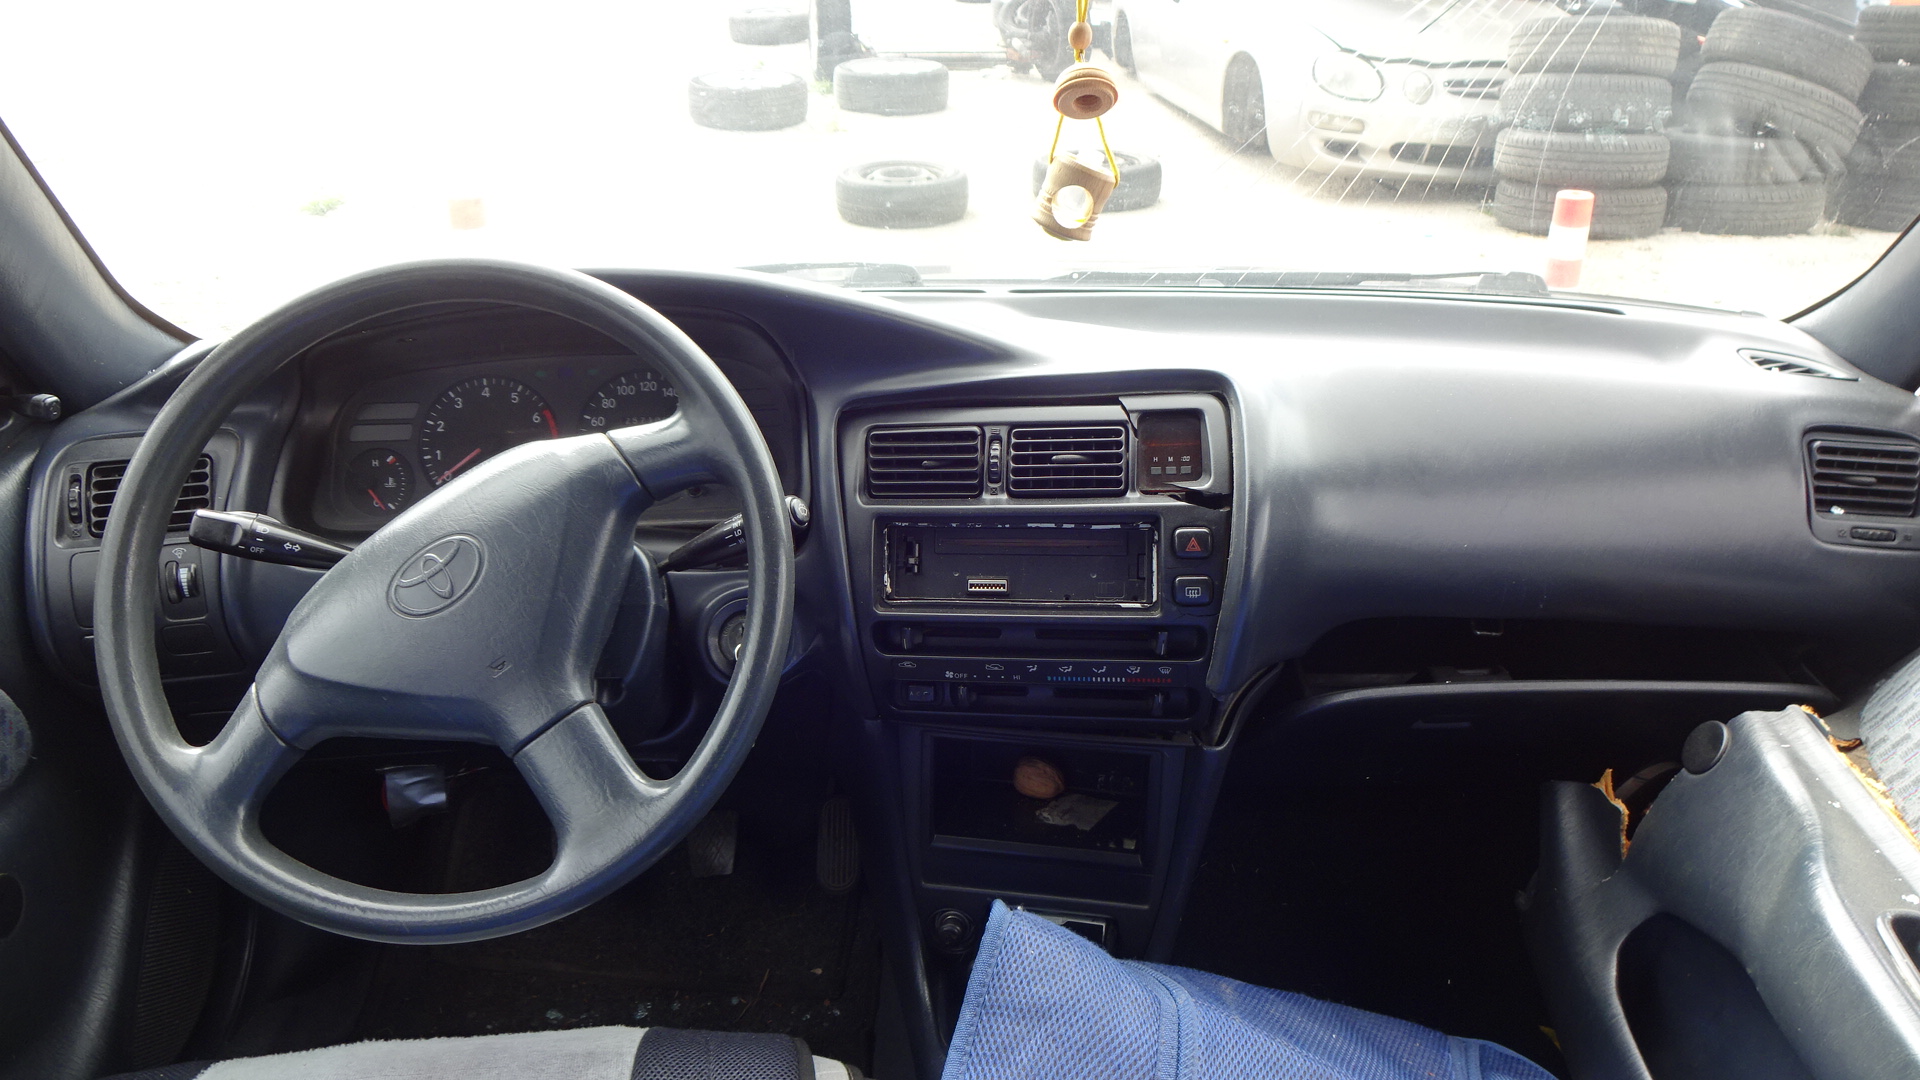 Κλειδαριές Ηλεκτρομαγνητικές Toyota Corolla ’97 Προσφορά.